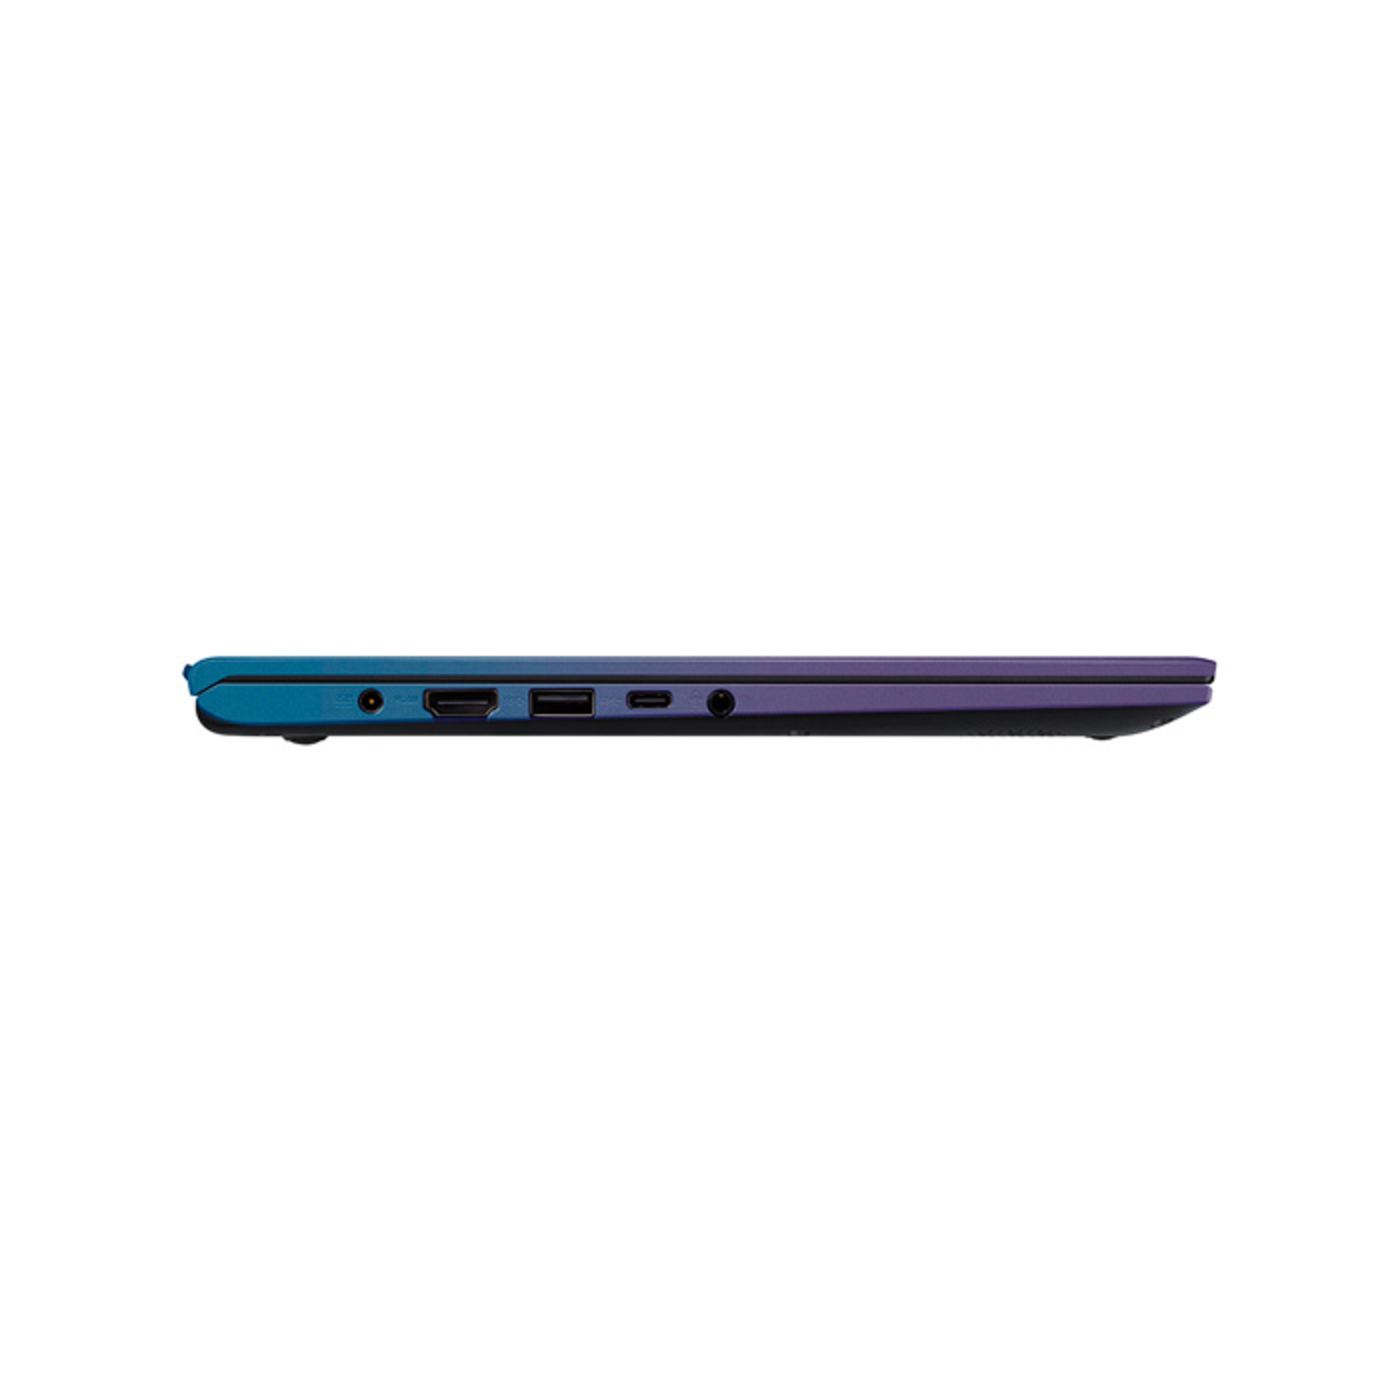 Computador Portátil ASUS VivoBook 14" Pulgadas X412DA-BV259T AMD Ryzen 5 - Ram 8GB - Disco Estado Sólido 256GB Azul